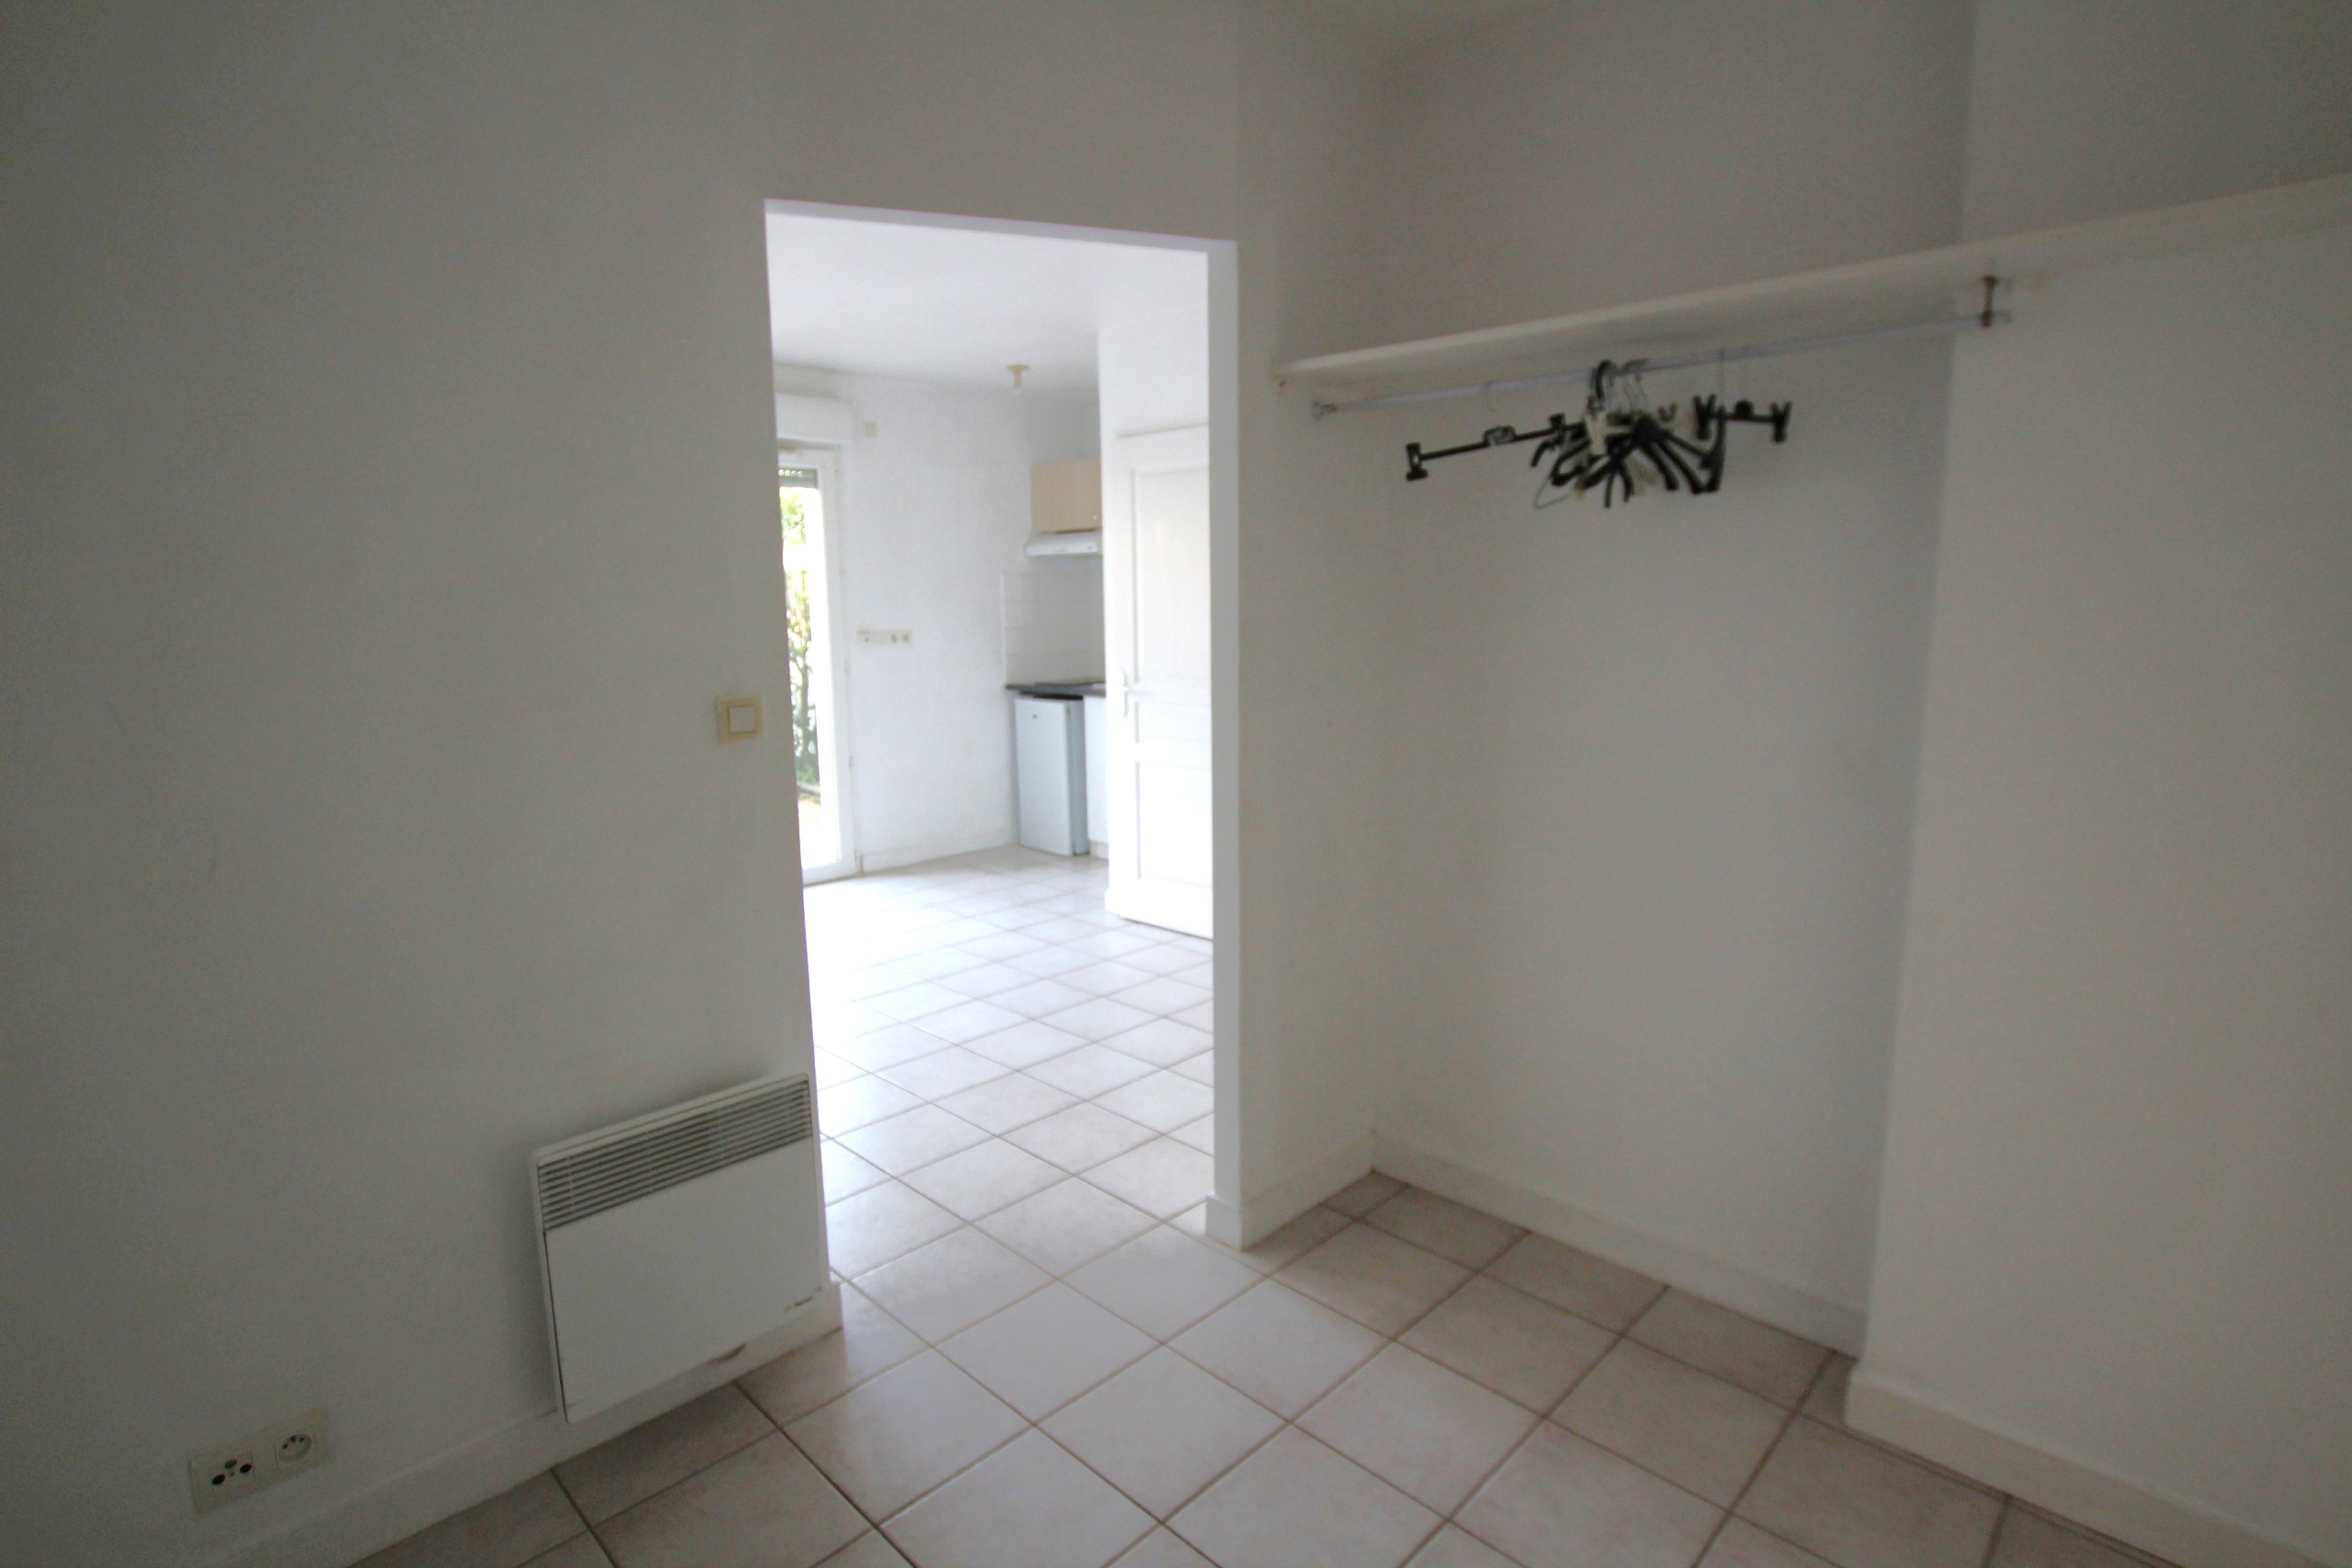 Qovop Immobilier | Achat Appartement 26 m² - 17440 Aytré 